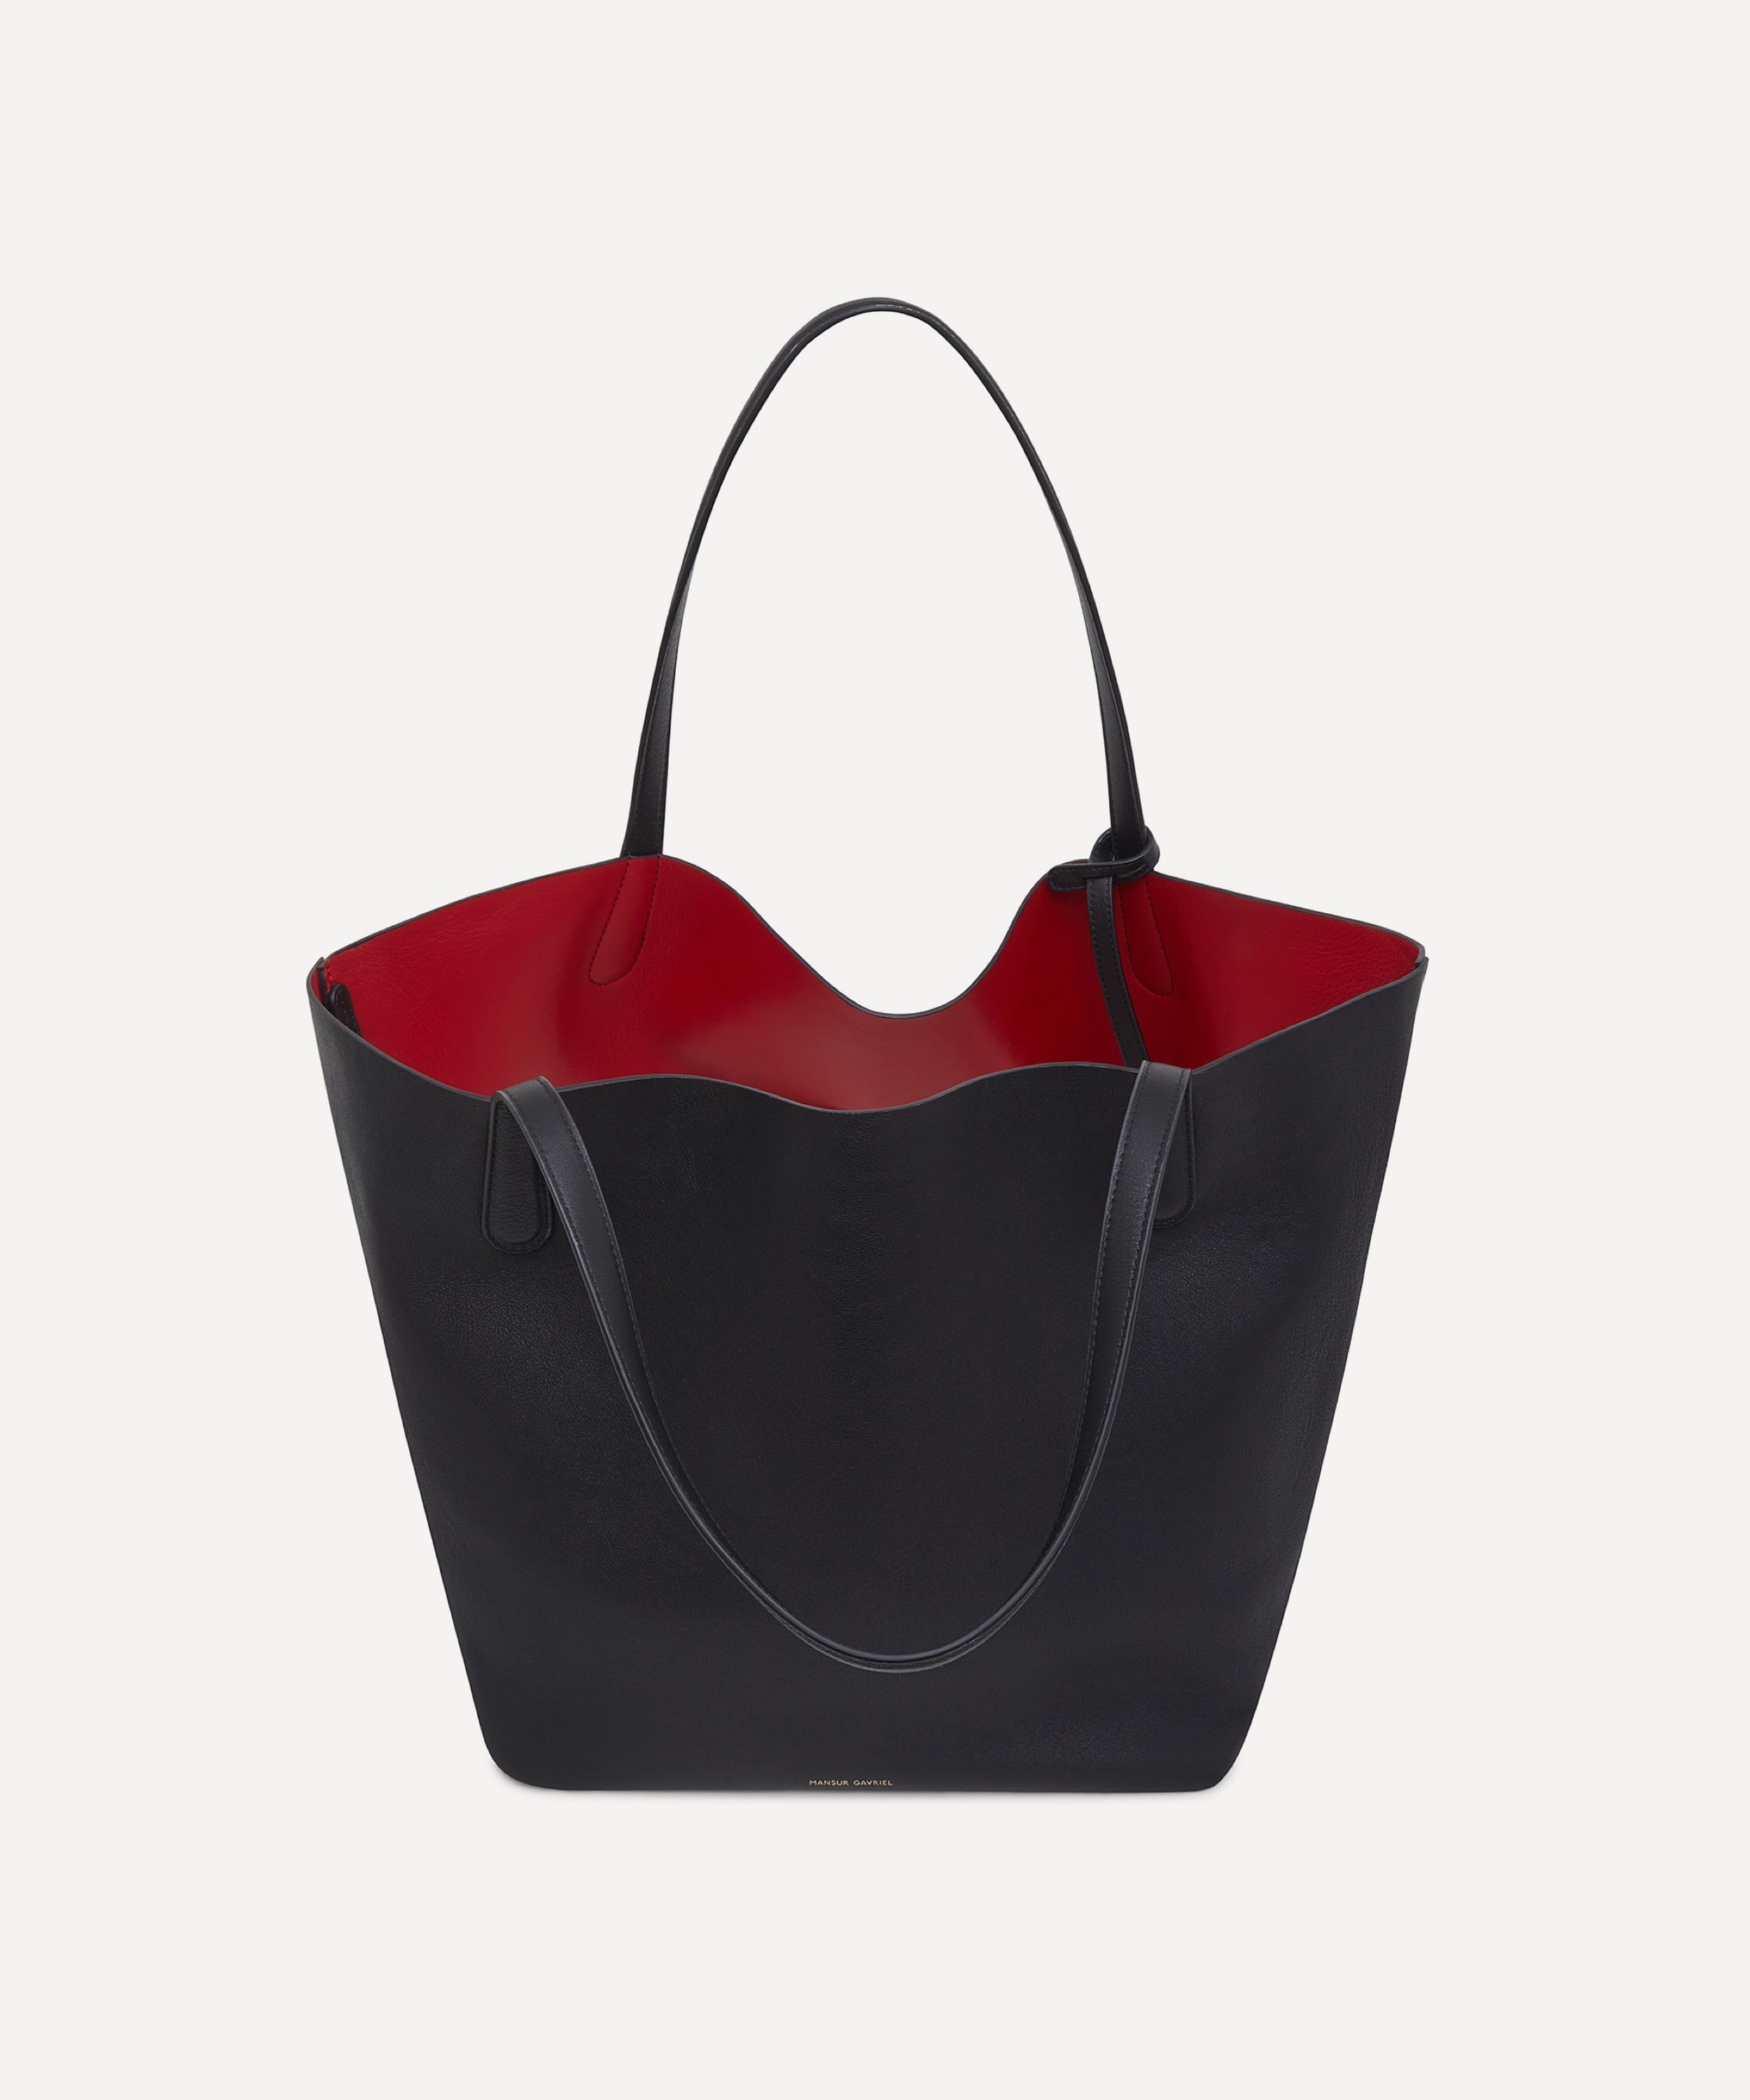 Mansur Gavriel Red-lined Large Leather Tote Bag in Black